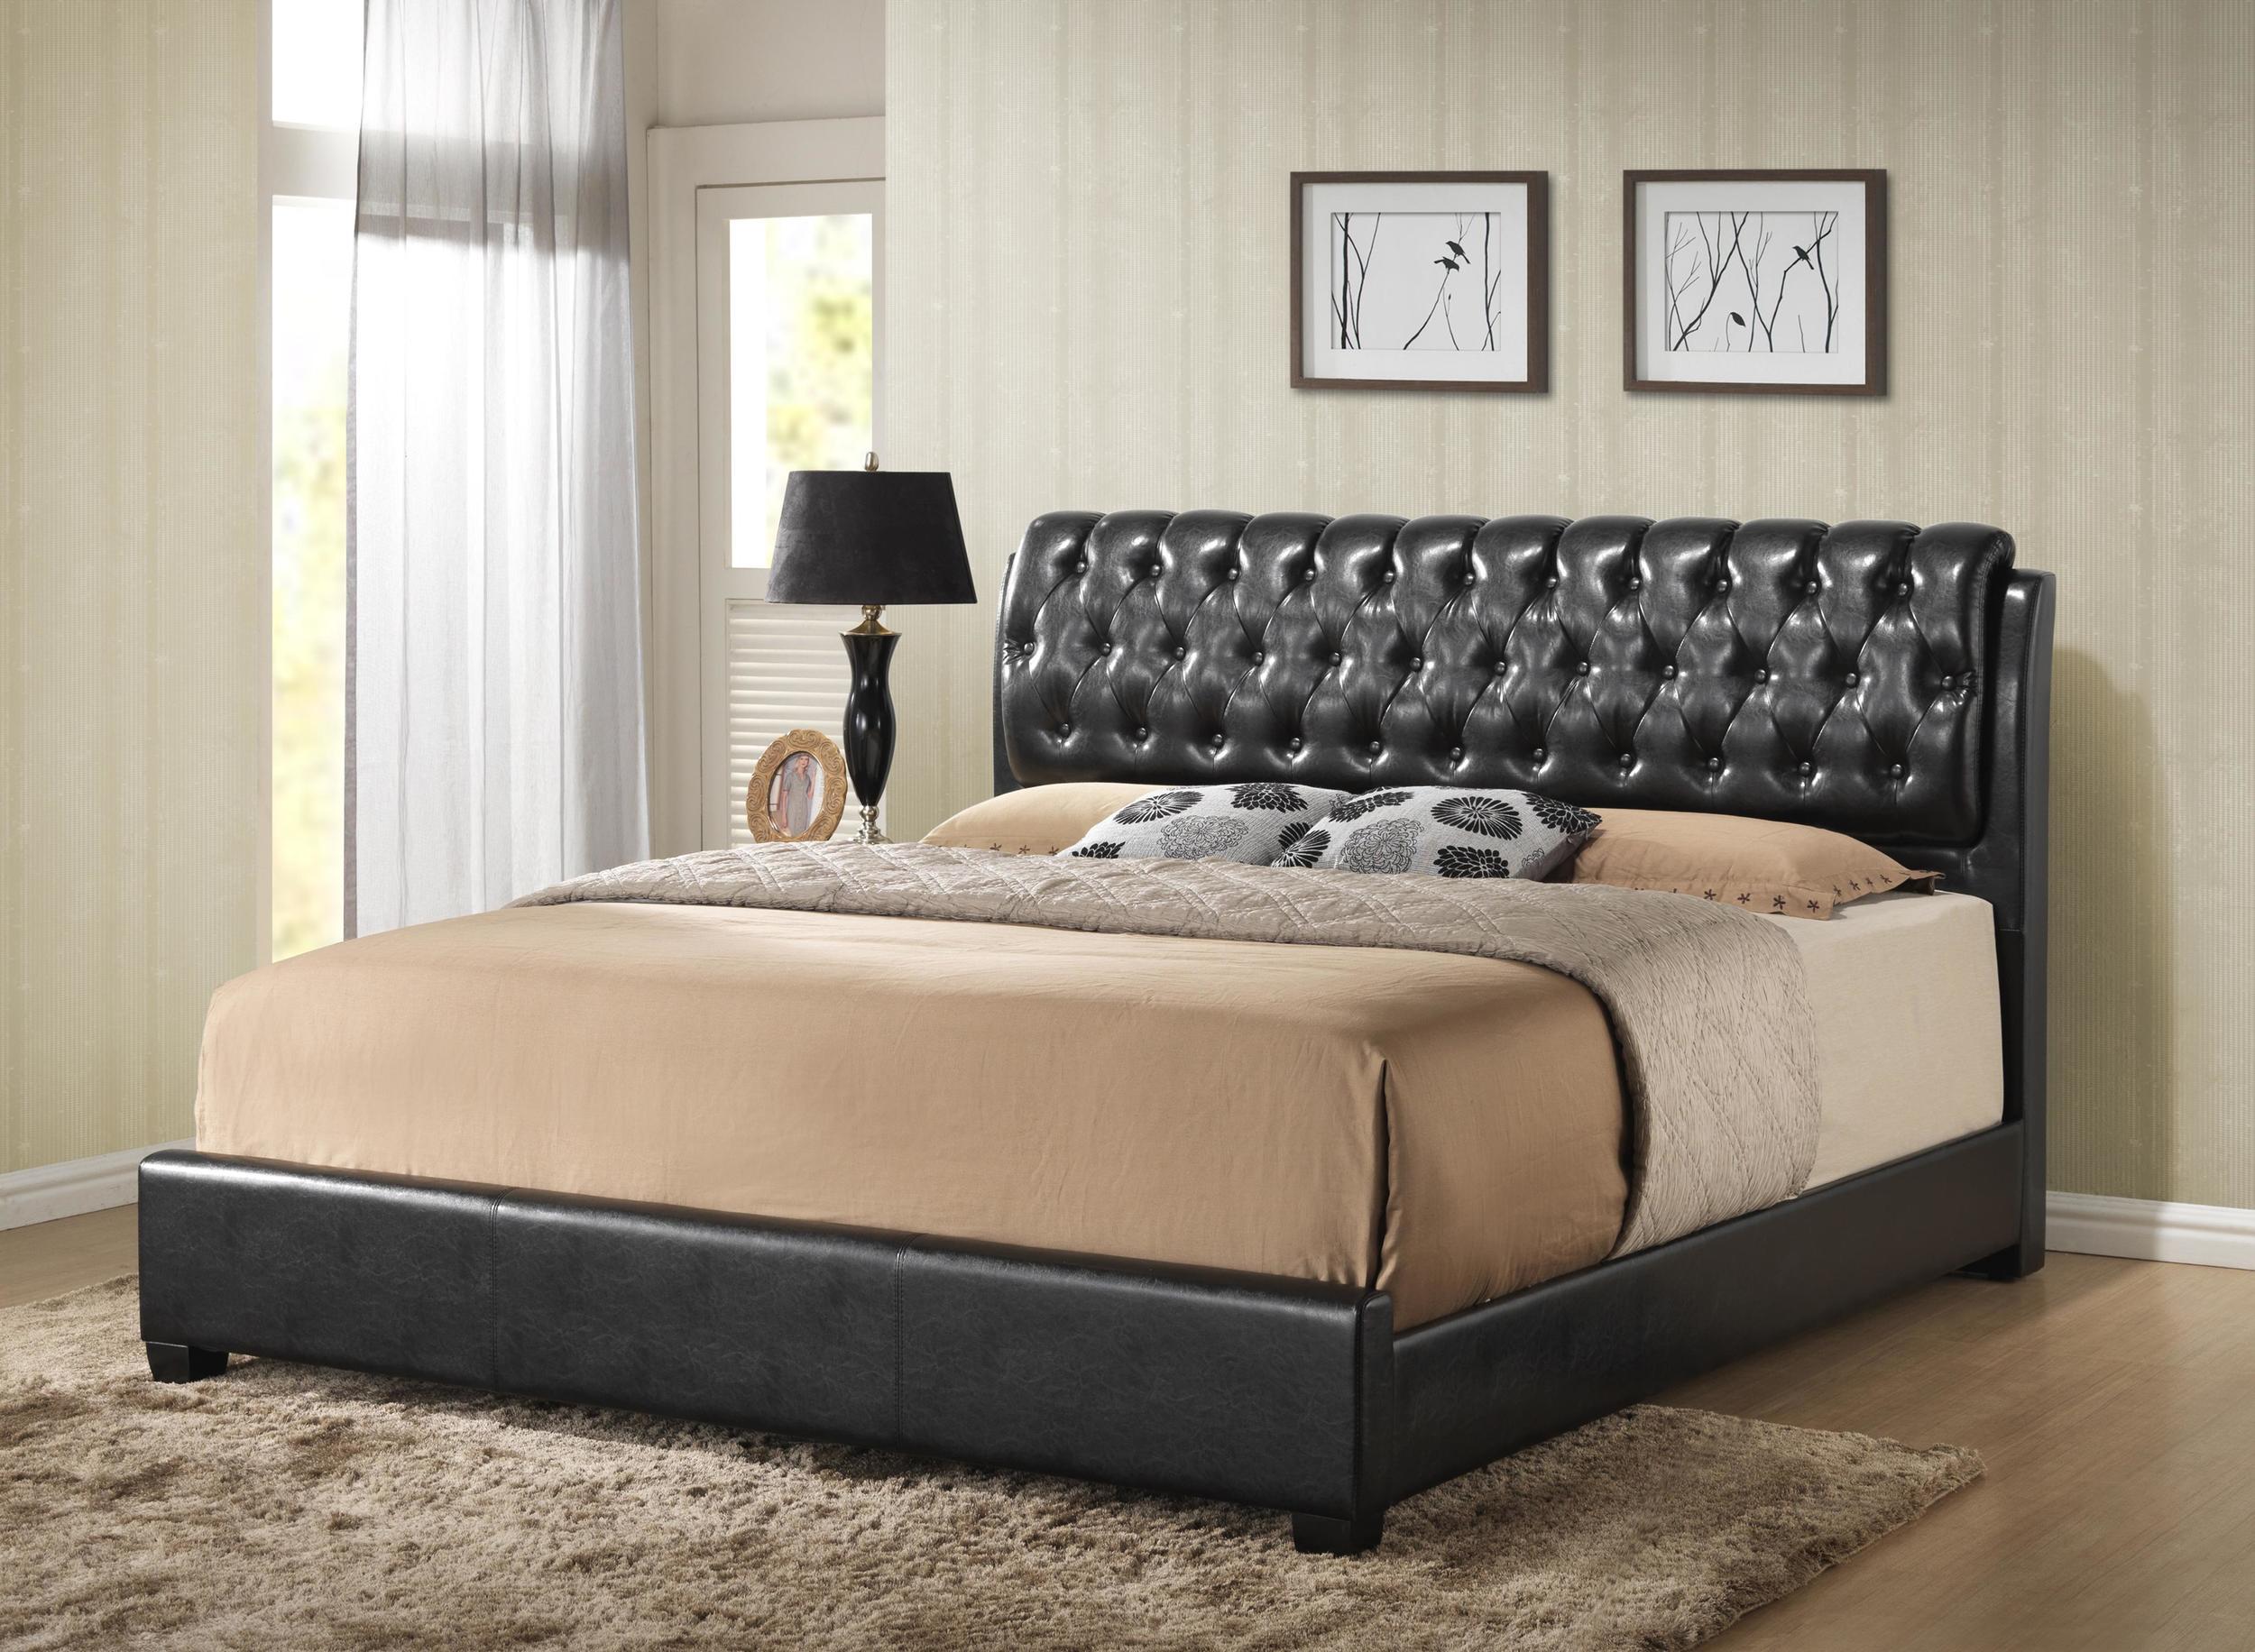 

    
MYCO Furniture 2956K-BK Barnes Black Eco Leather King Platform Bedroom Set 3Pcs
